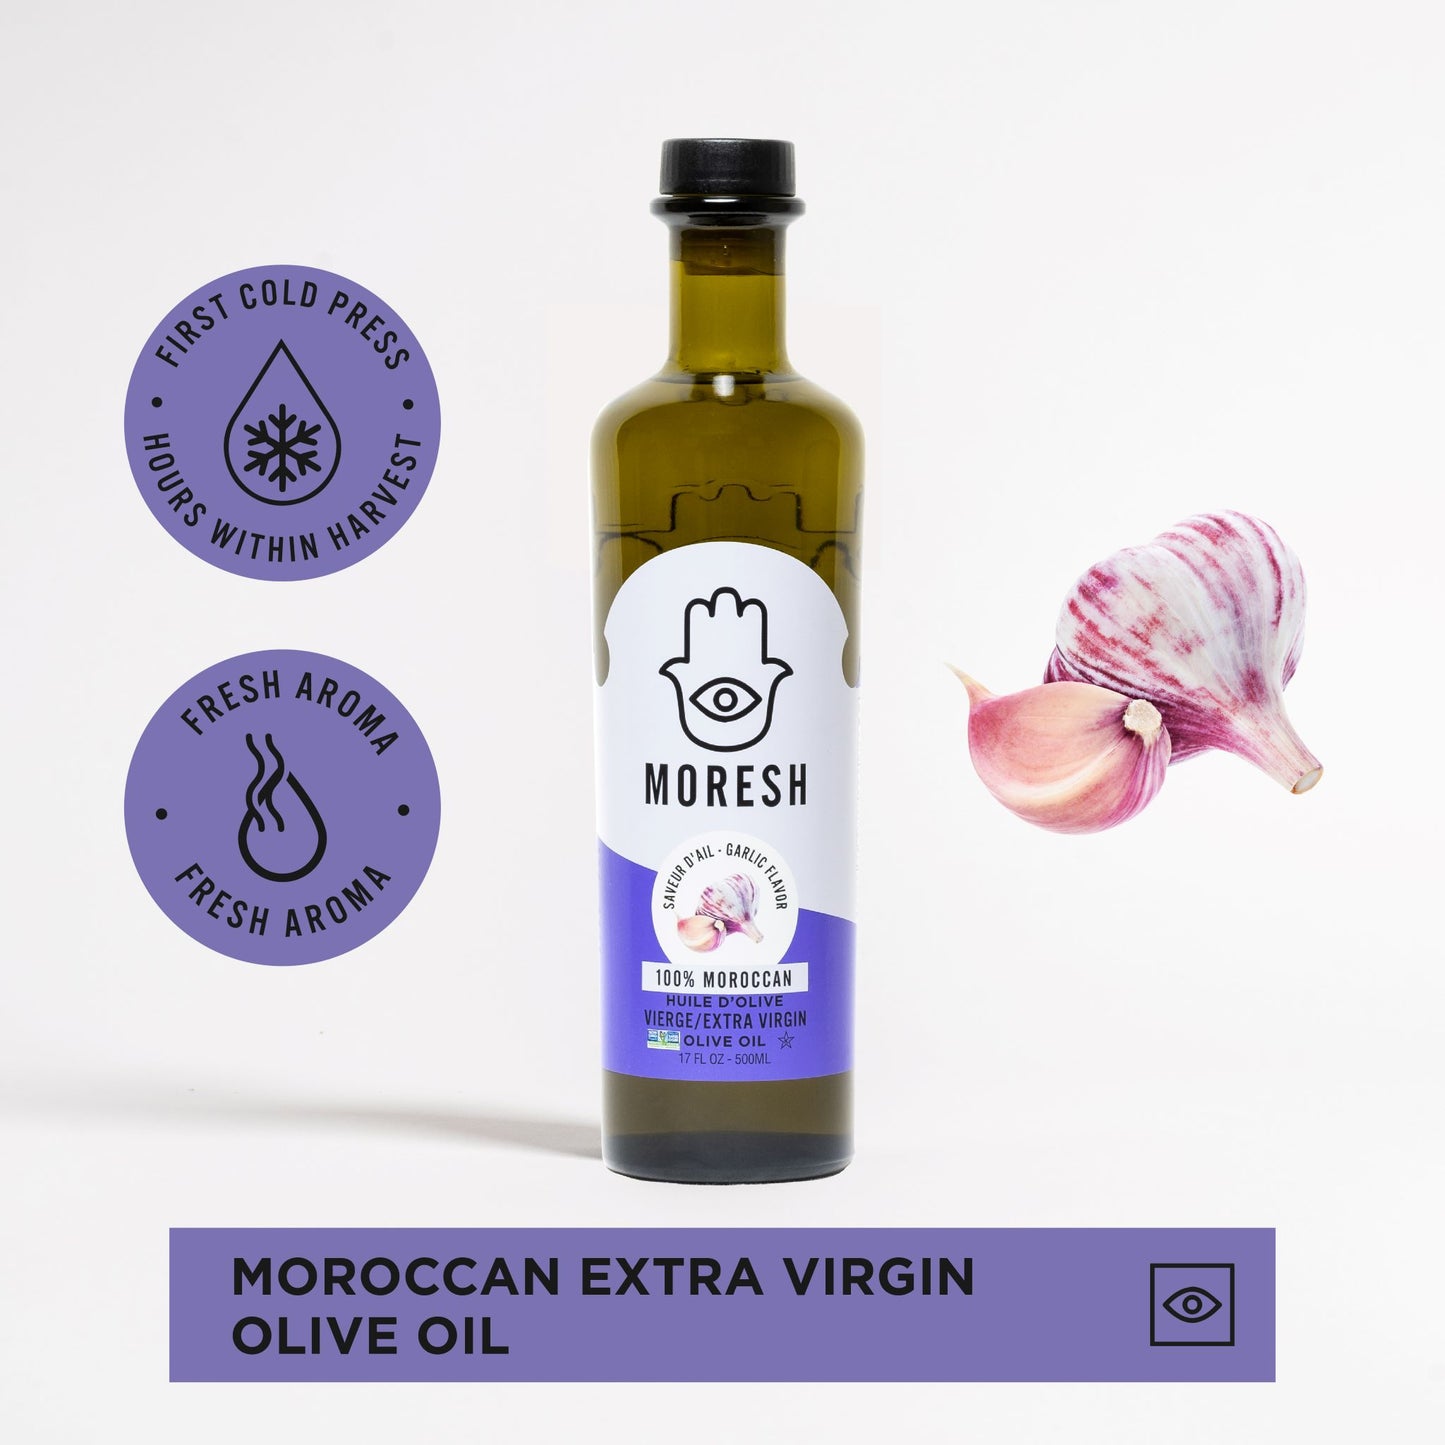 
                  
                    Moresh Garlic Flavored Olive Oil
                  
                